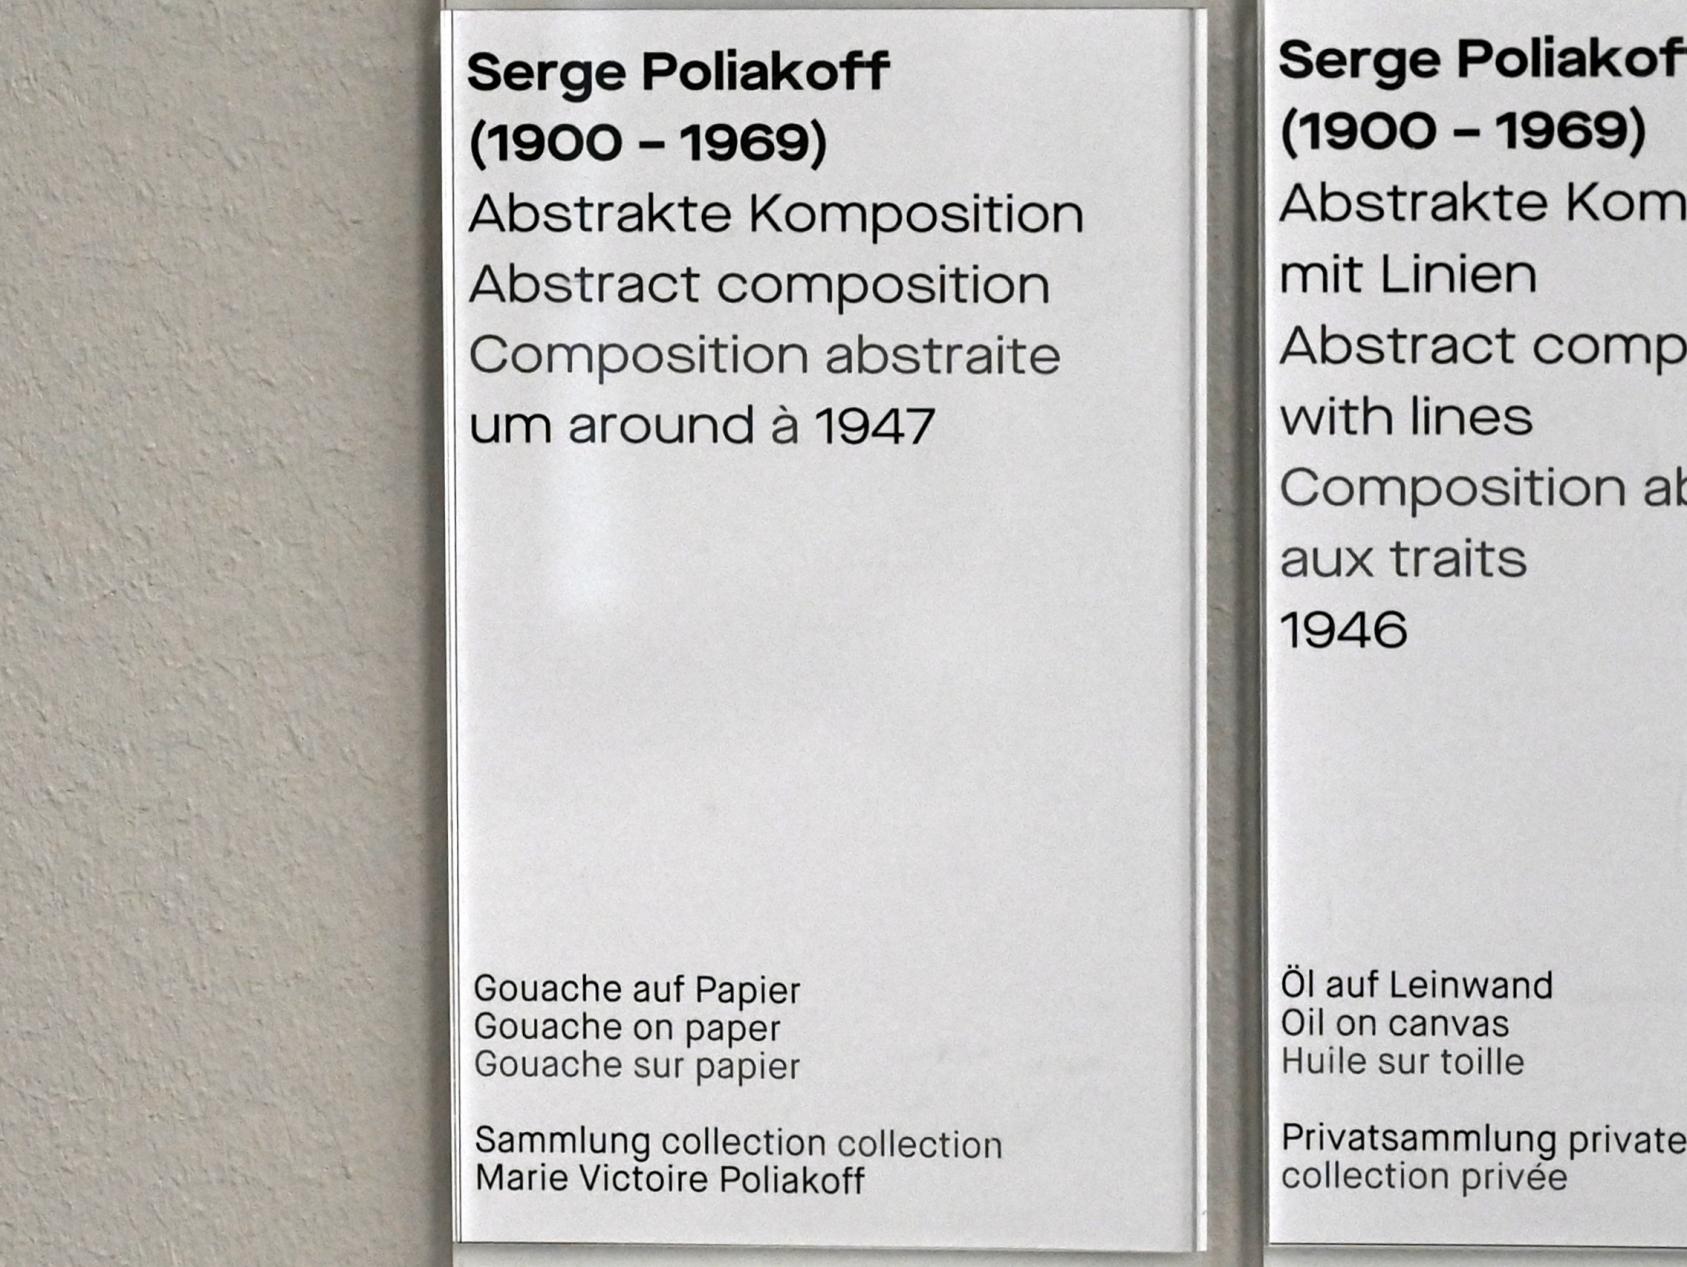 Serge Poliakoff (1936–1968), Abstrakte Komposition, Chemnitz, Museum Gunzenhauser, Saal 2.3 - Serge Poliakoff, um 1947, Bild 2/2